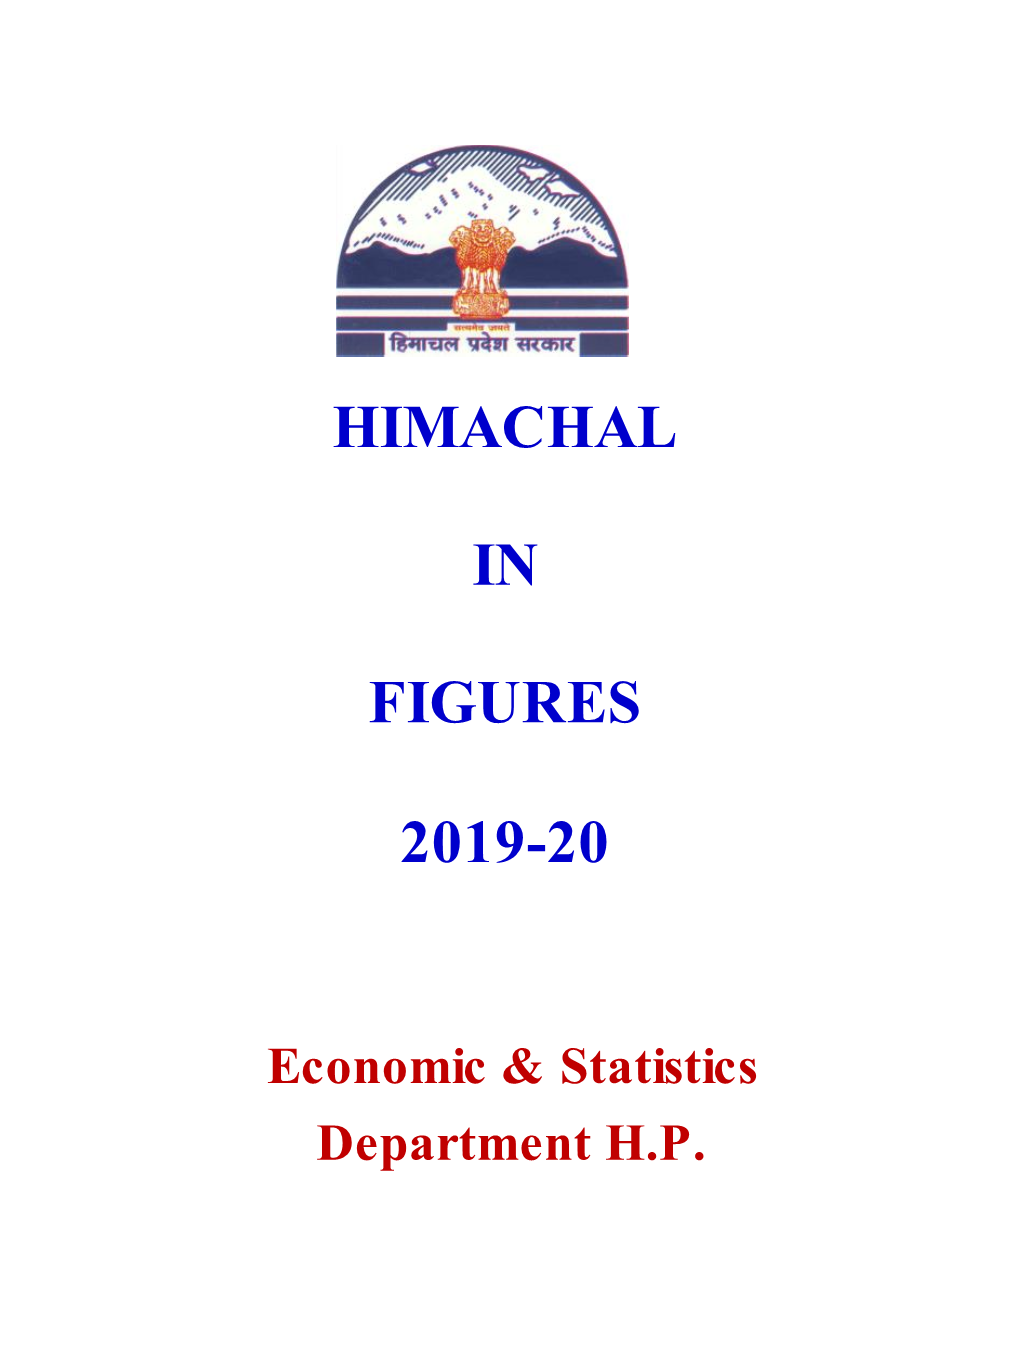 Himachal in Figures 2019-20